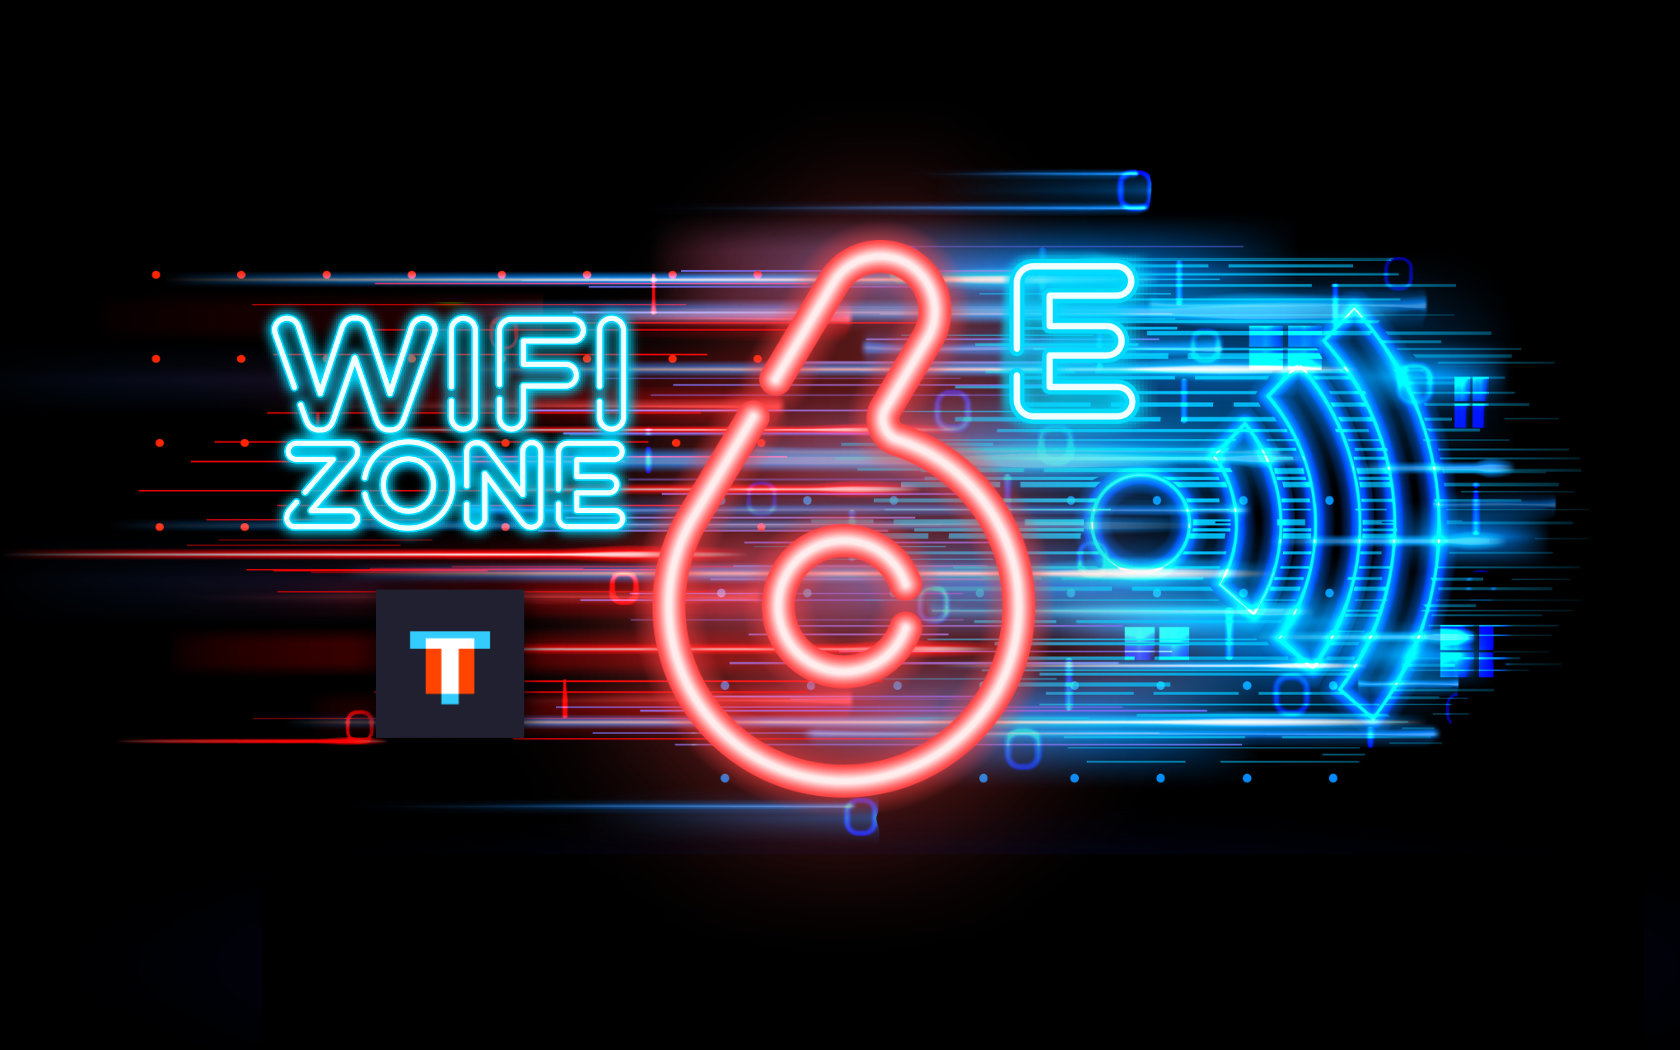 Крупнейшее обновление за 20 лет: что такое Wi-Fi 6E и почему он так важен